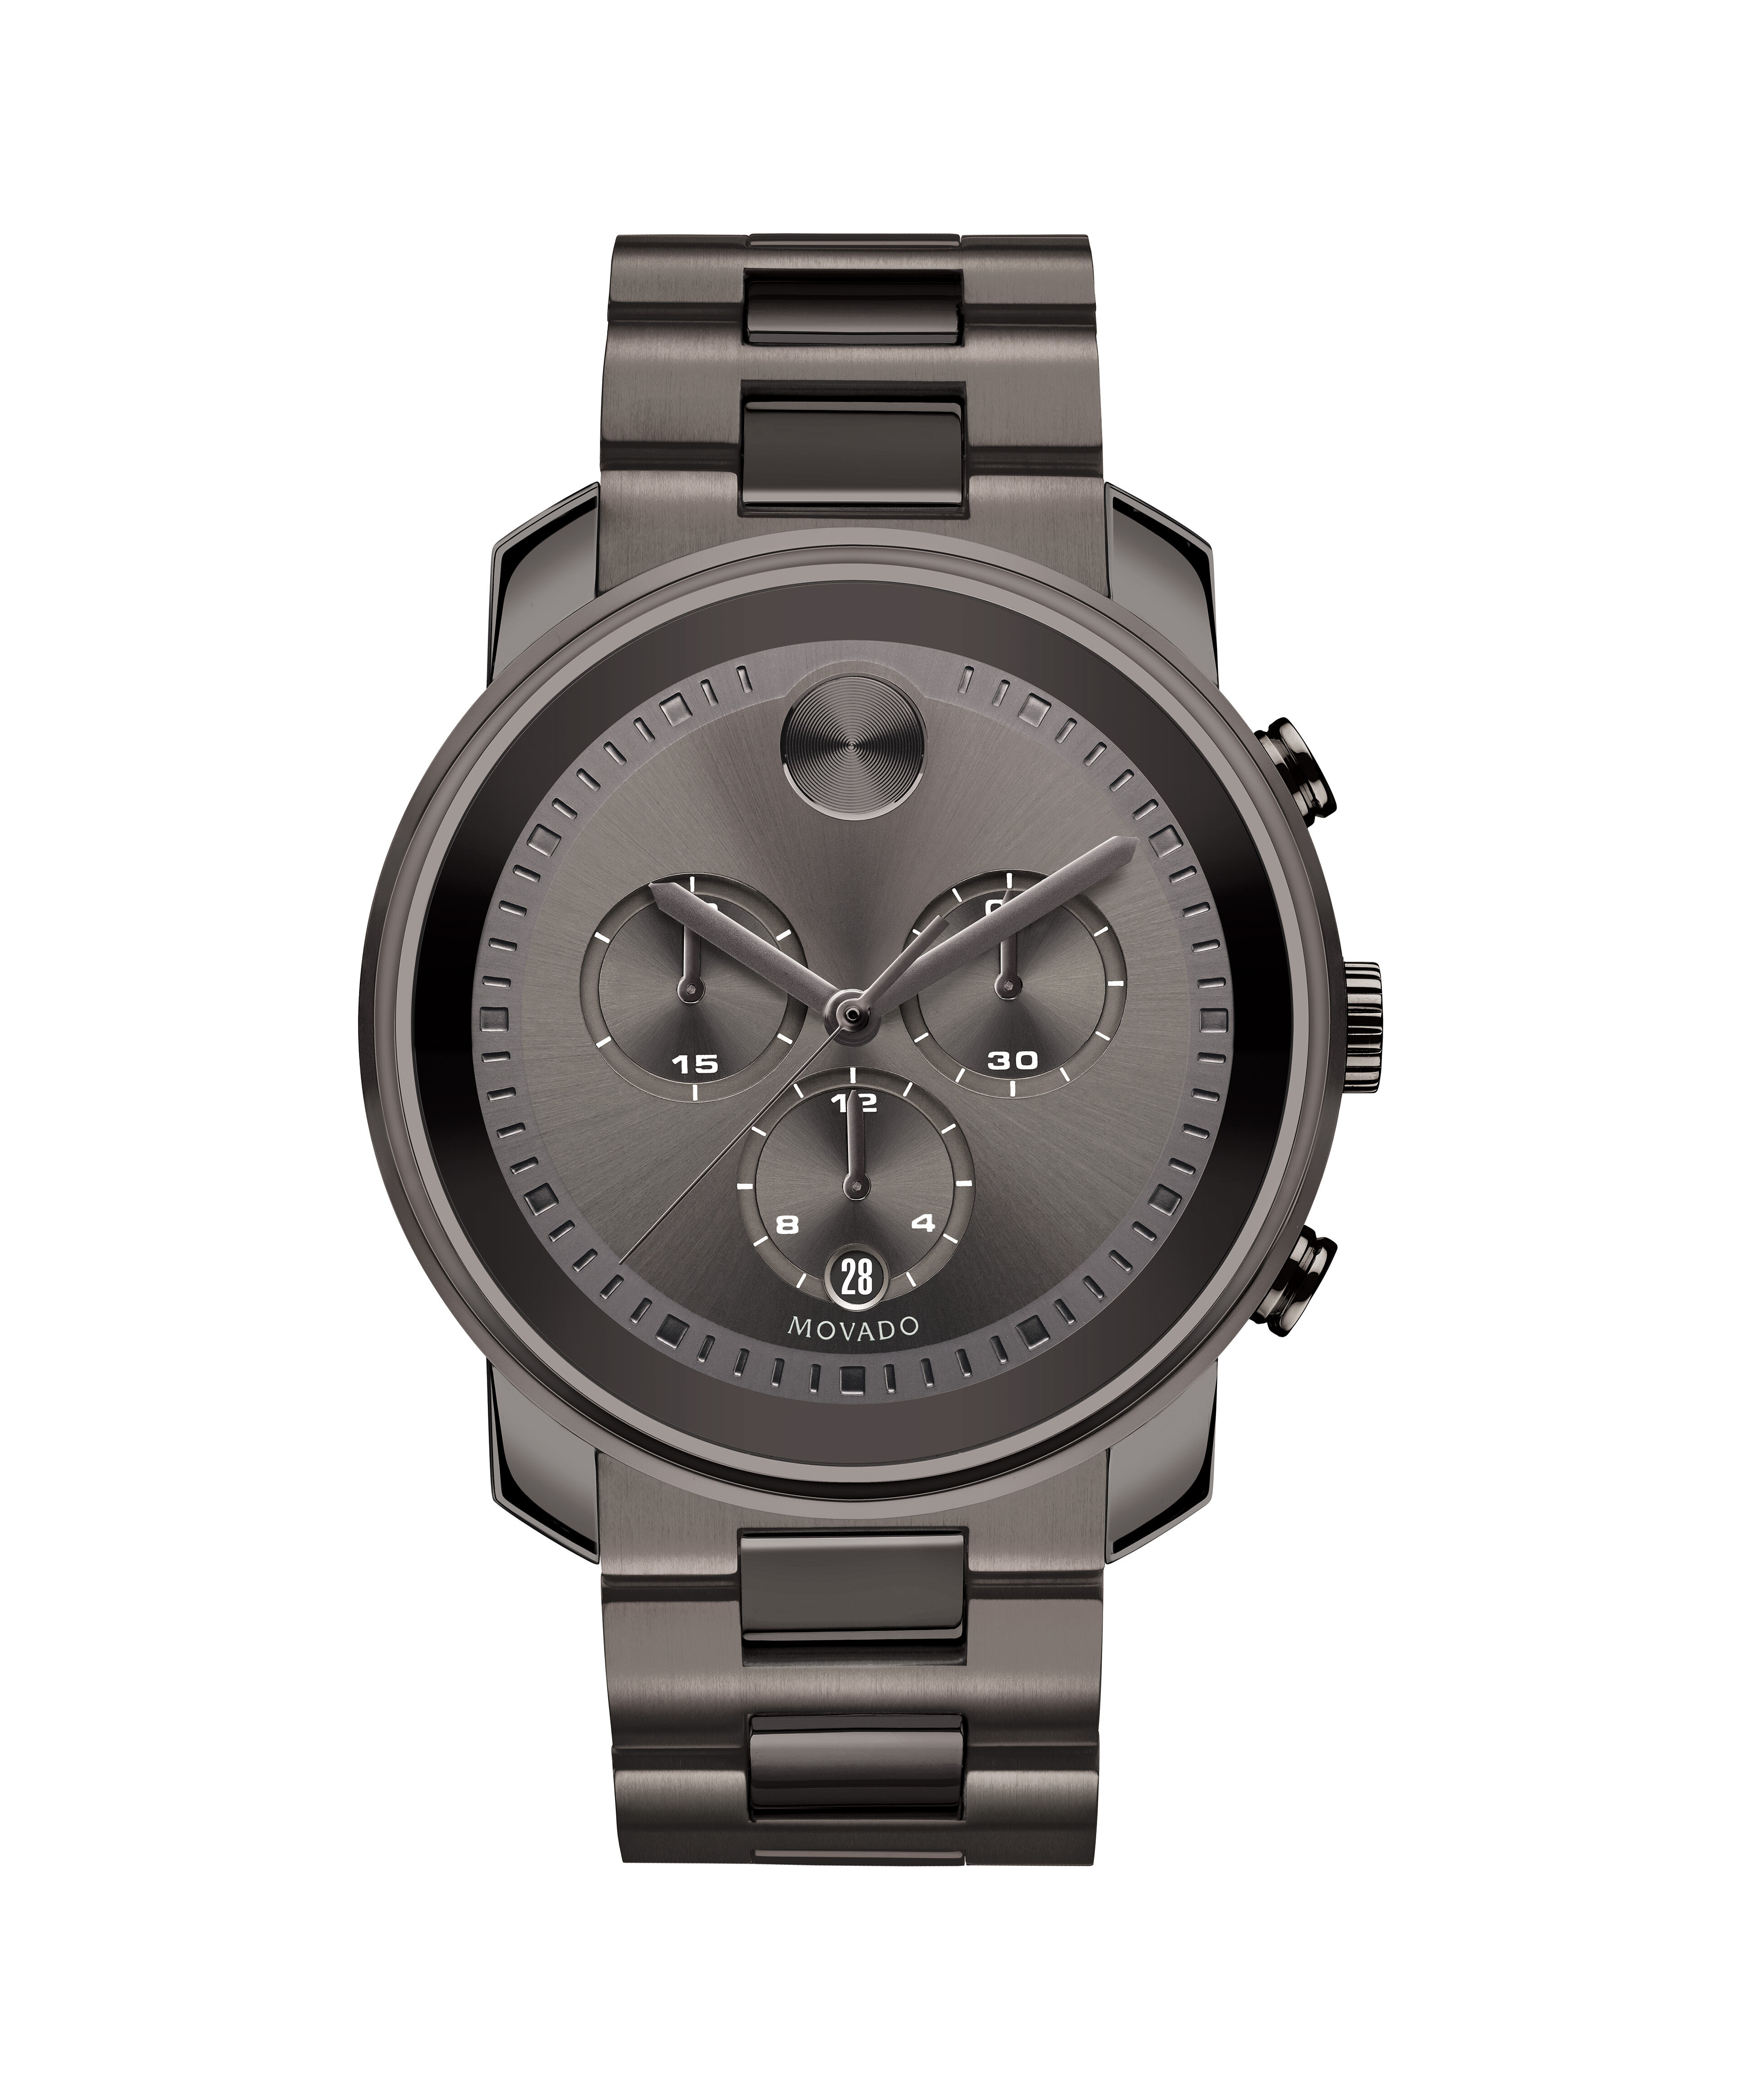 Wholesale Replica Rolex Watch